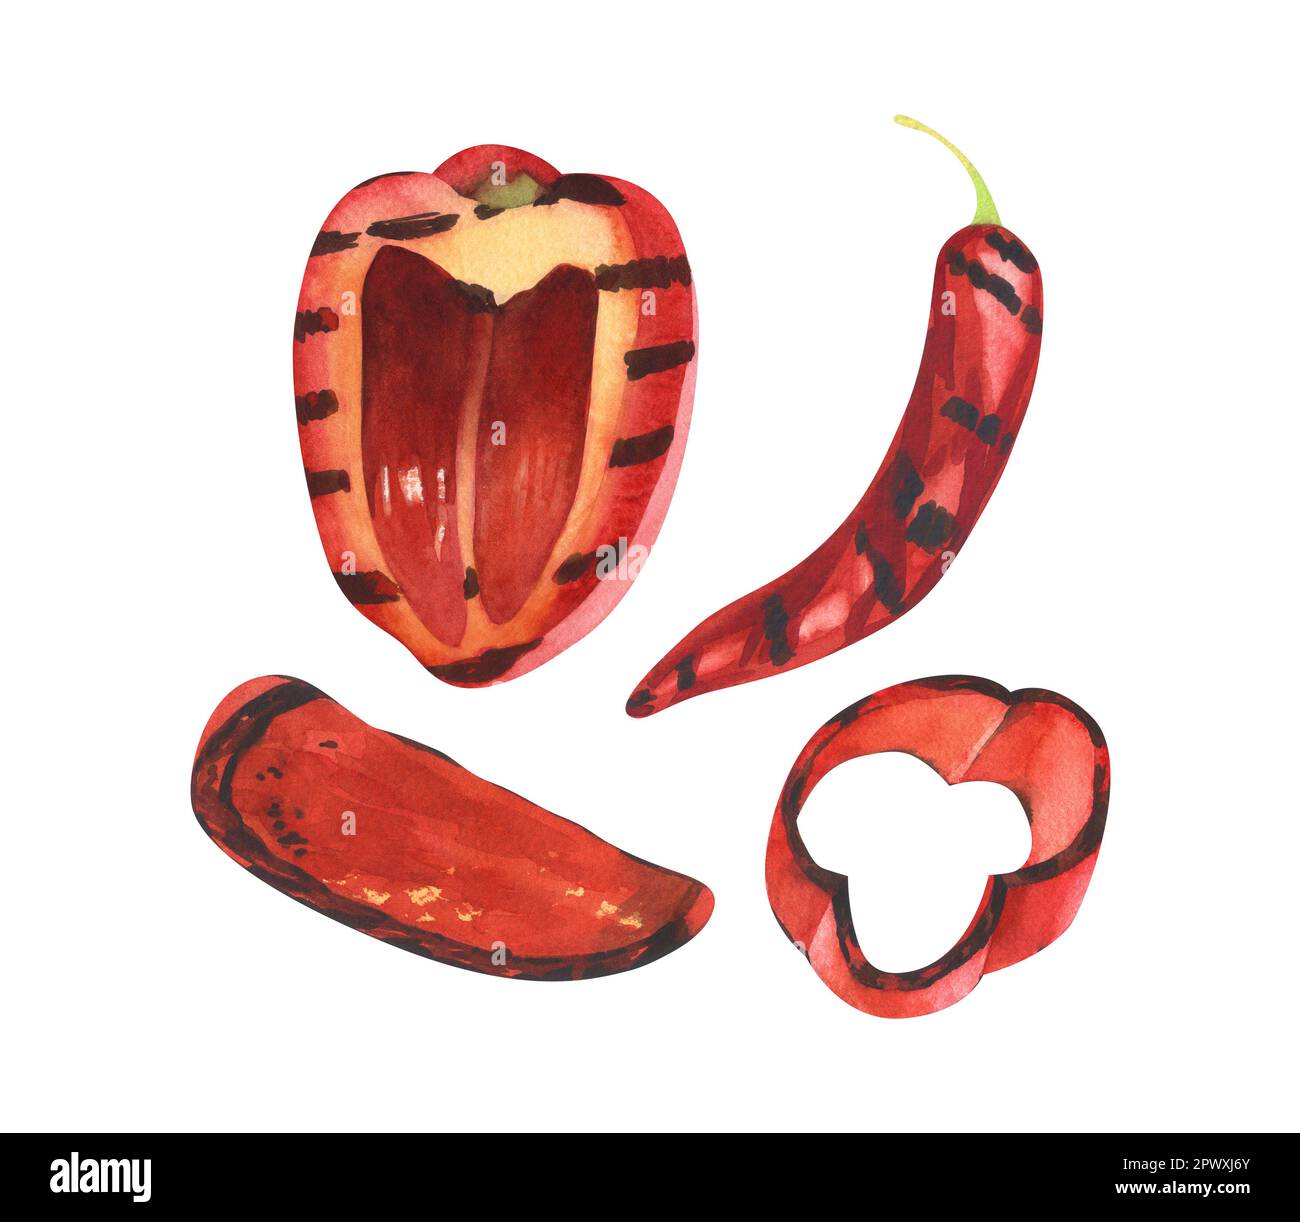 Acquerello con paprika fresca grigliata al peperoncino rosso. Illustrazione disegnata a mano isolata su sfondo bianco. Perfetto per menu caffè, ristorante, ricette Foto Stock